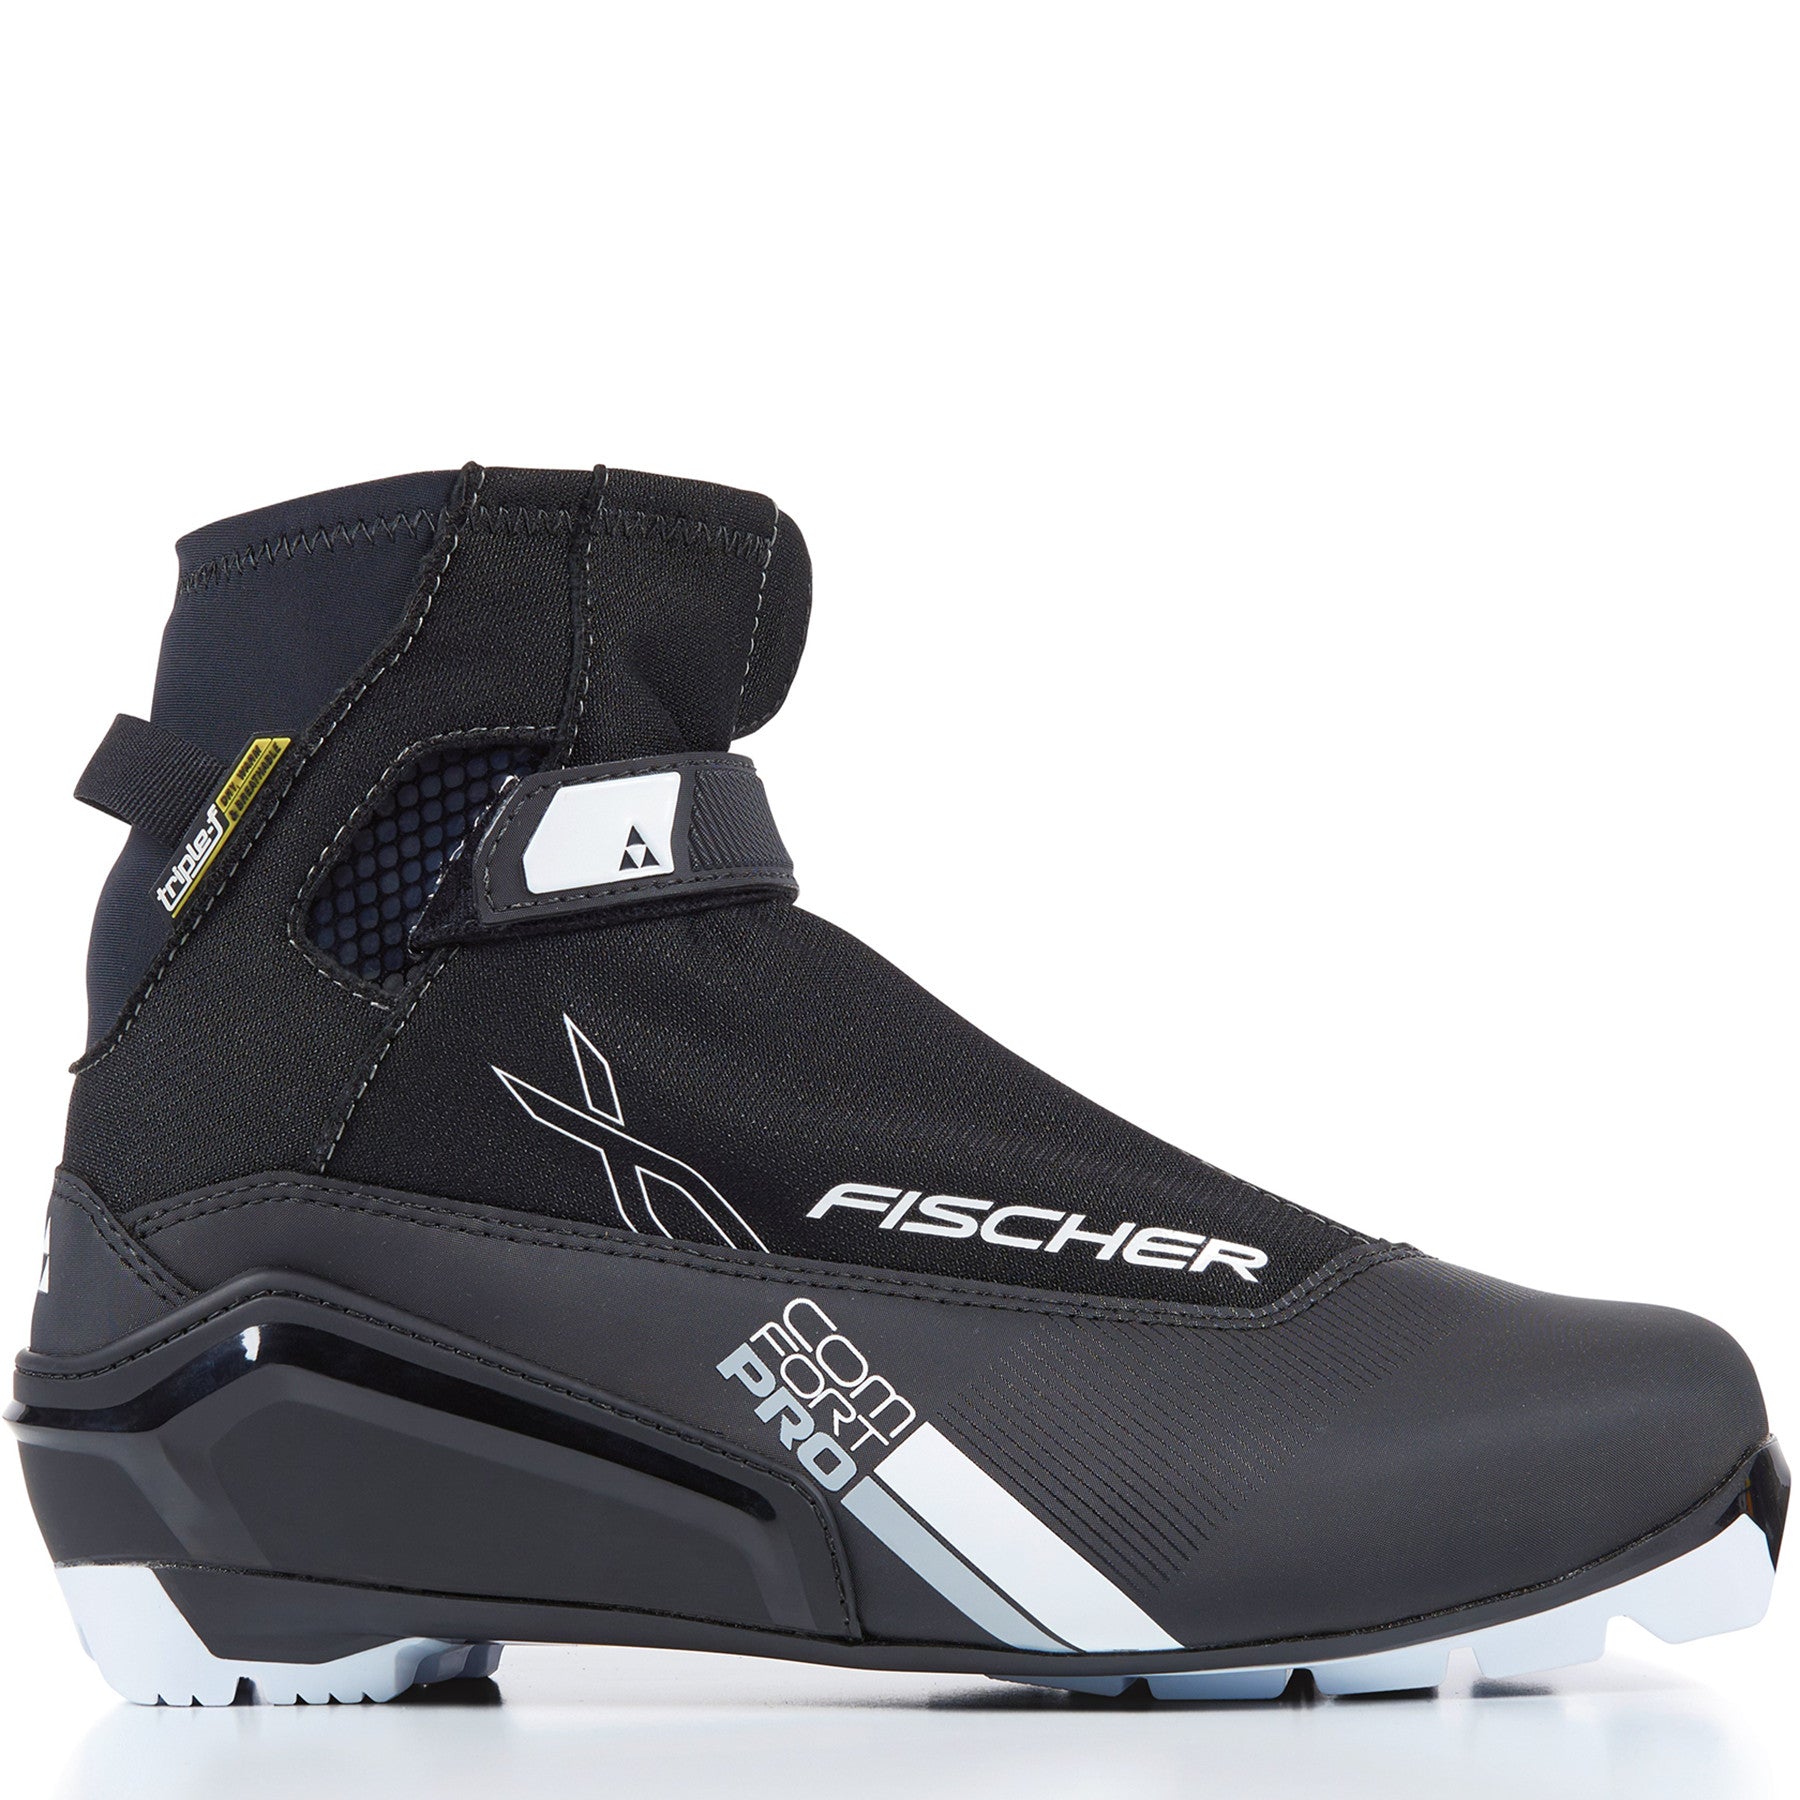 Fischer XC Comfort Pro Touring Boot